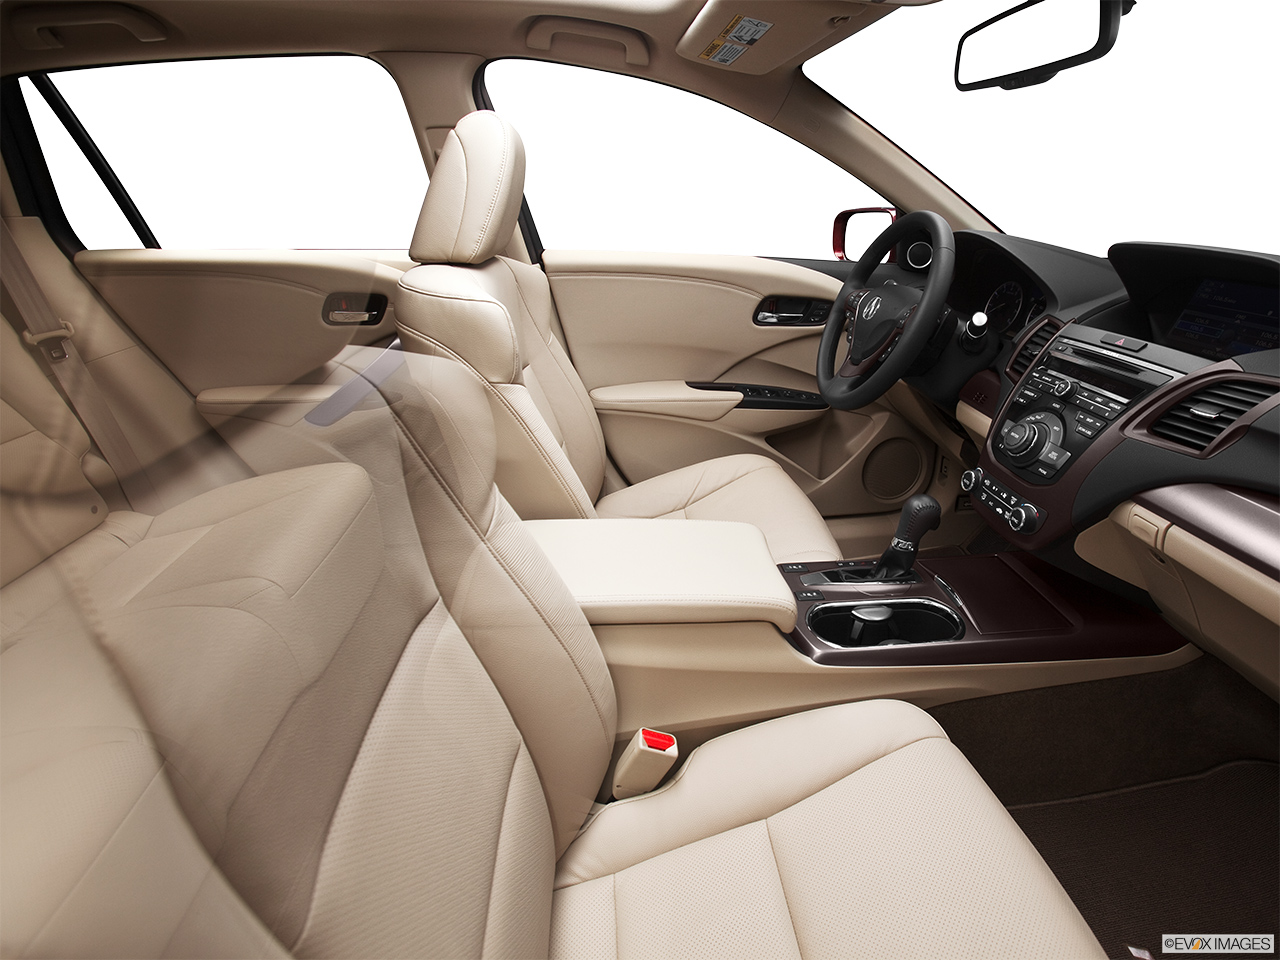 2013 Acura RDX AWD Fake Buck Shot - Interior from Passenger B pillar. 